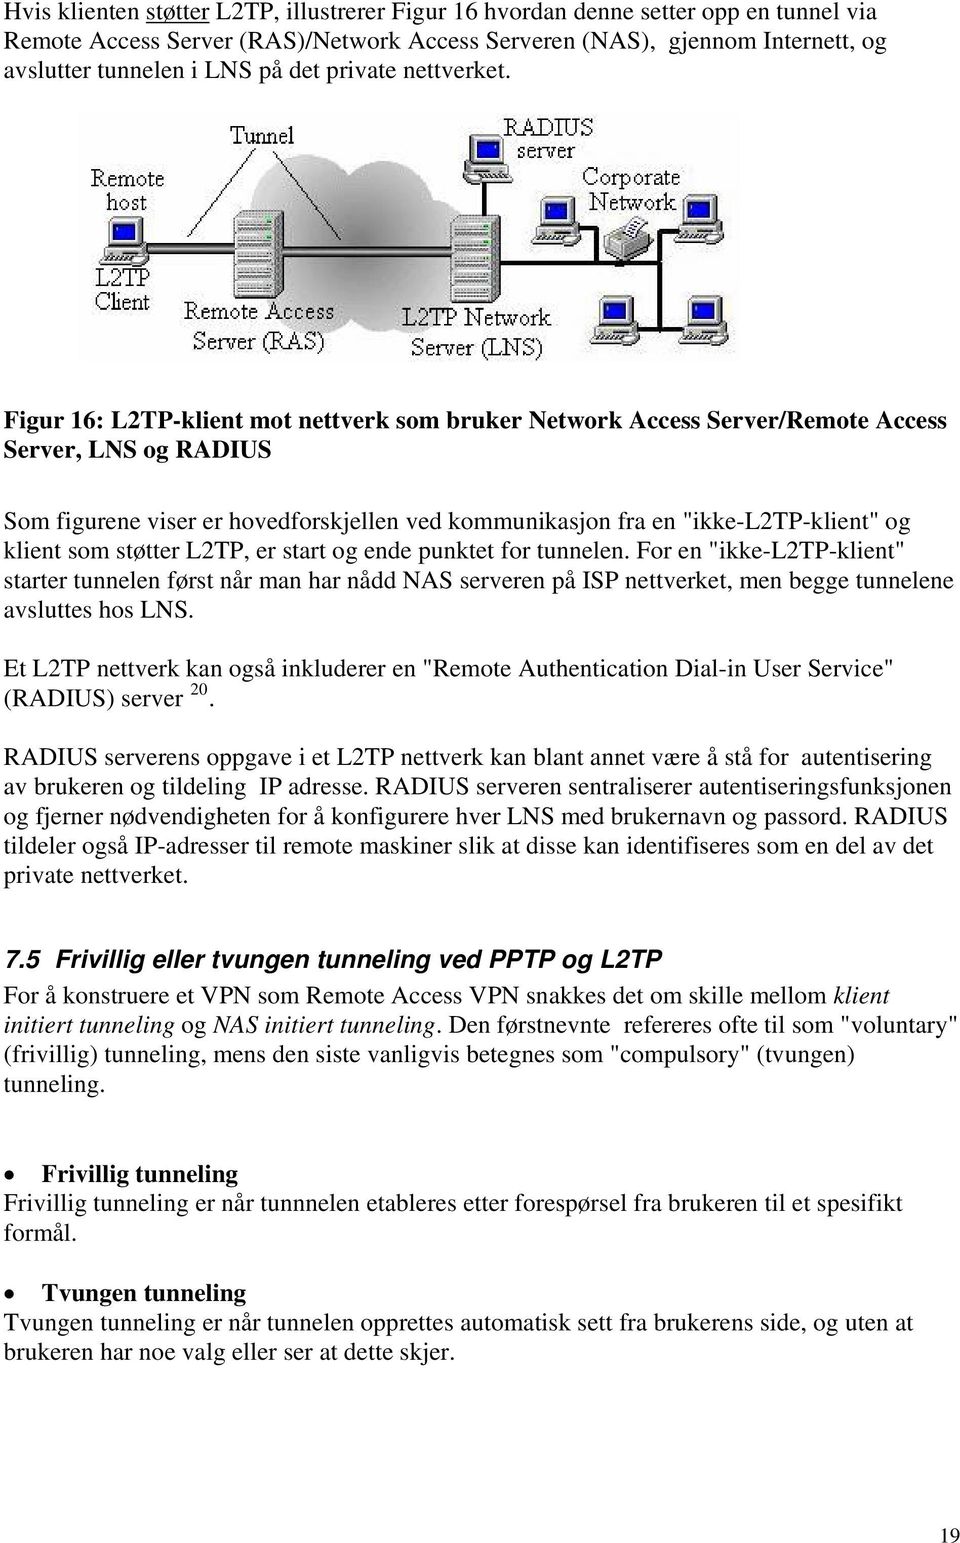 Figur 16: L2TP-klient mot nettverk som bruker Network Access Server/Remote Access Server, LNS og RADIUS Som figurene viser er hovedforskjellen ved kommunikasjon fra en "ikke-l2tp-klient" og klient